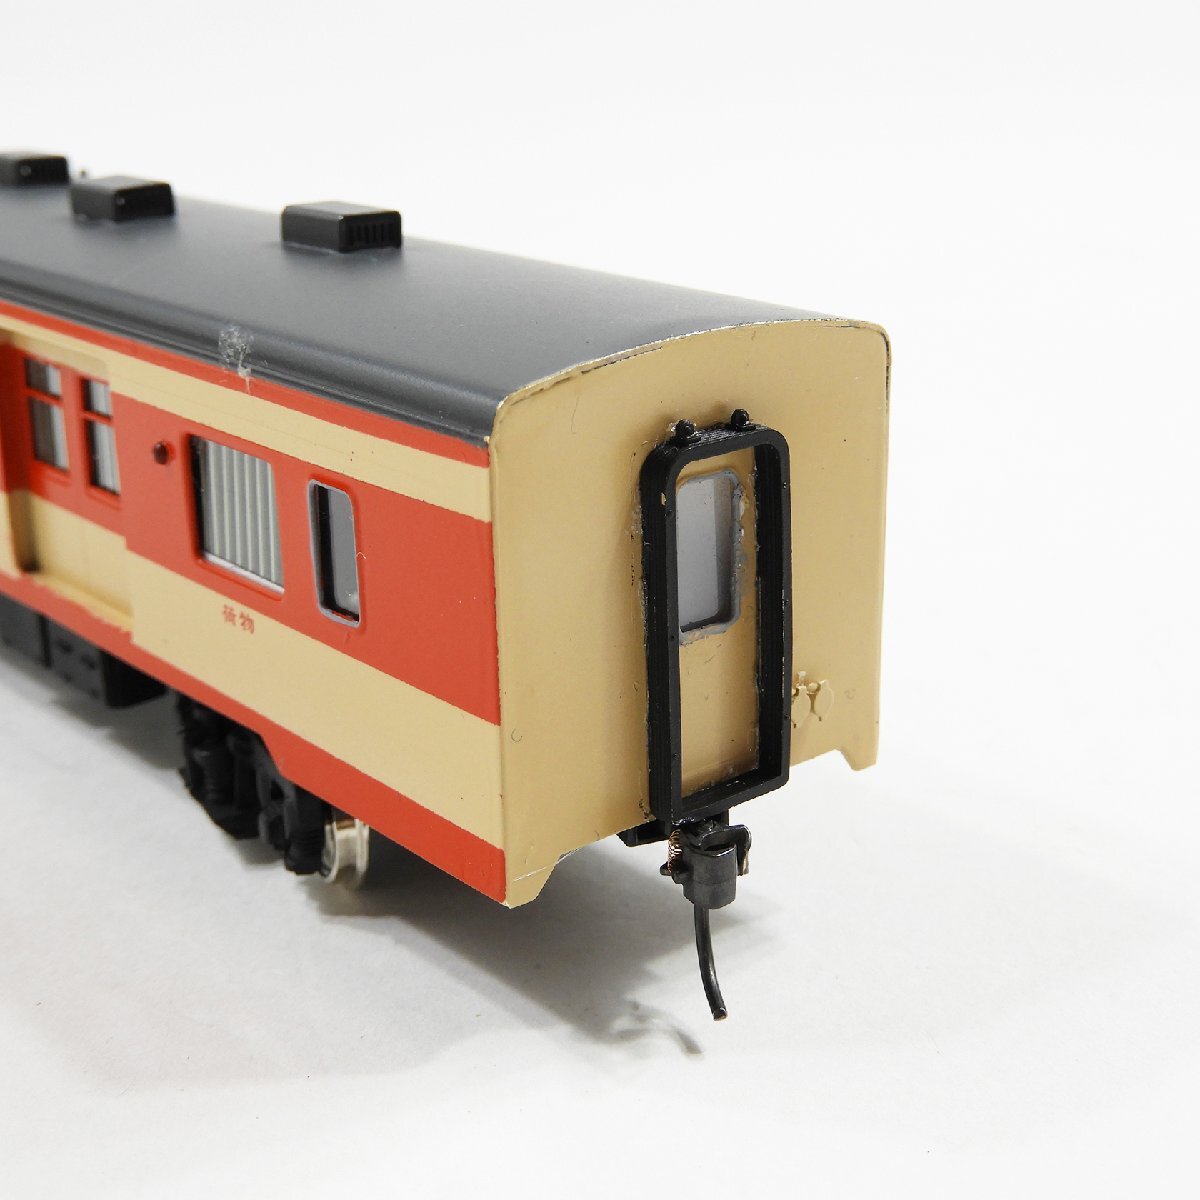 キニ26 しなのマイクロキット組立品 #17224 鉄道模型 ホビー 趣味 コレクション_画像4